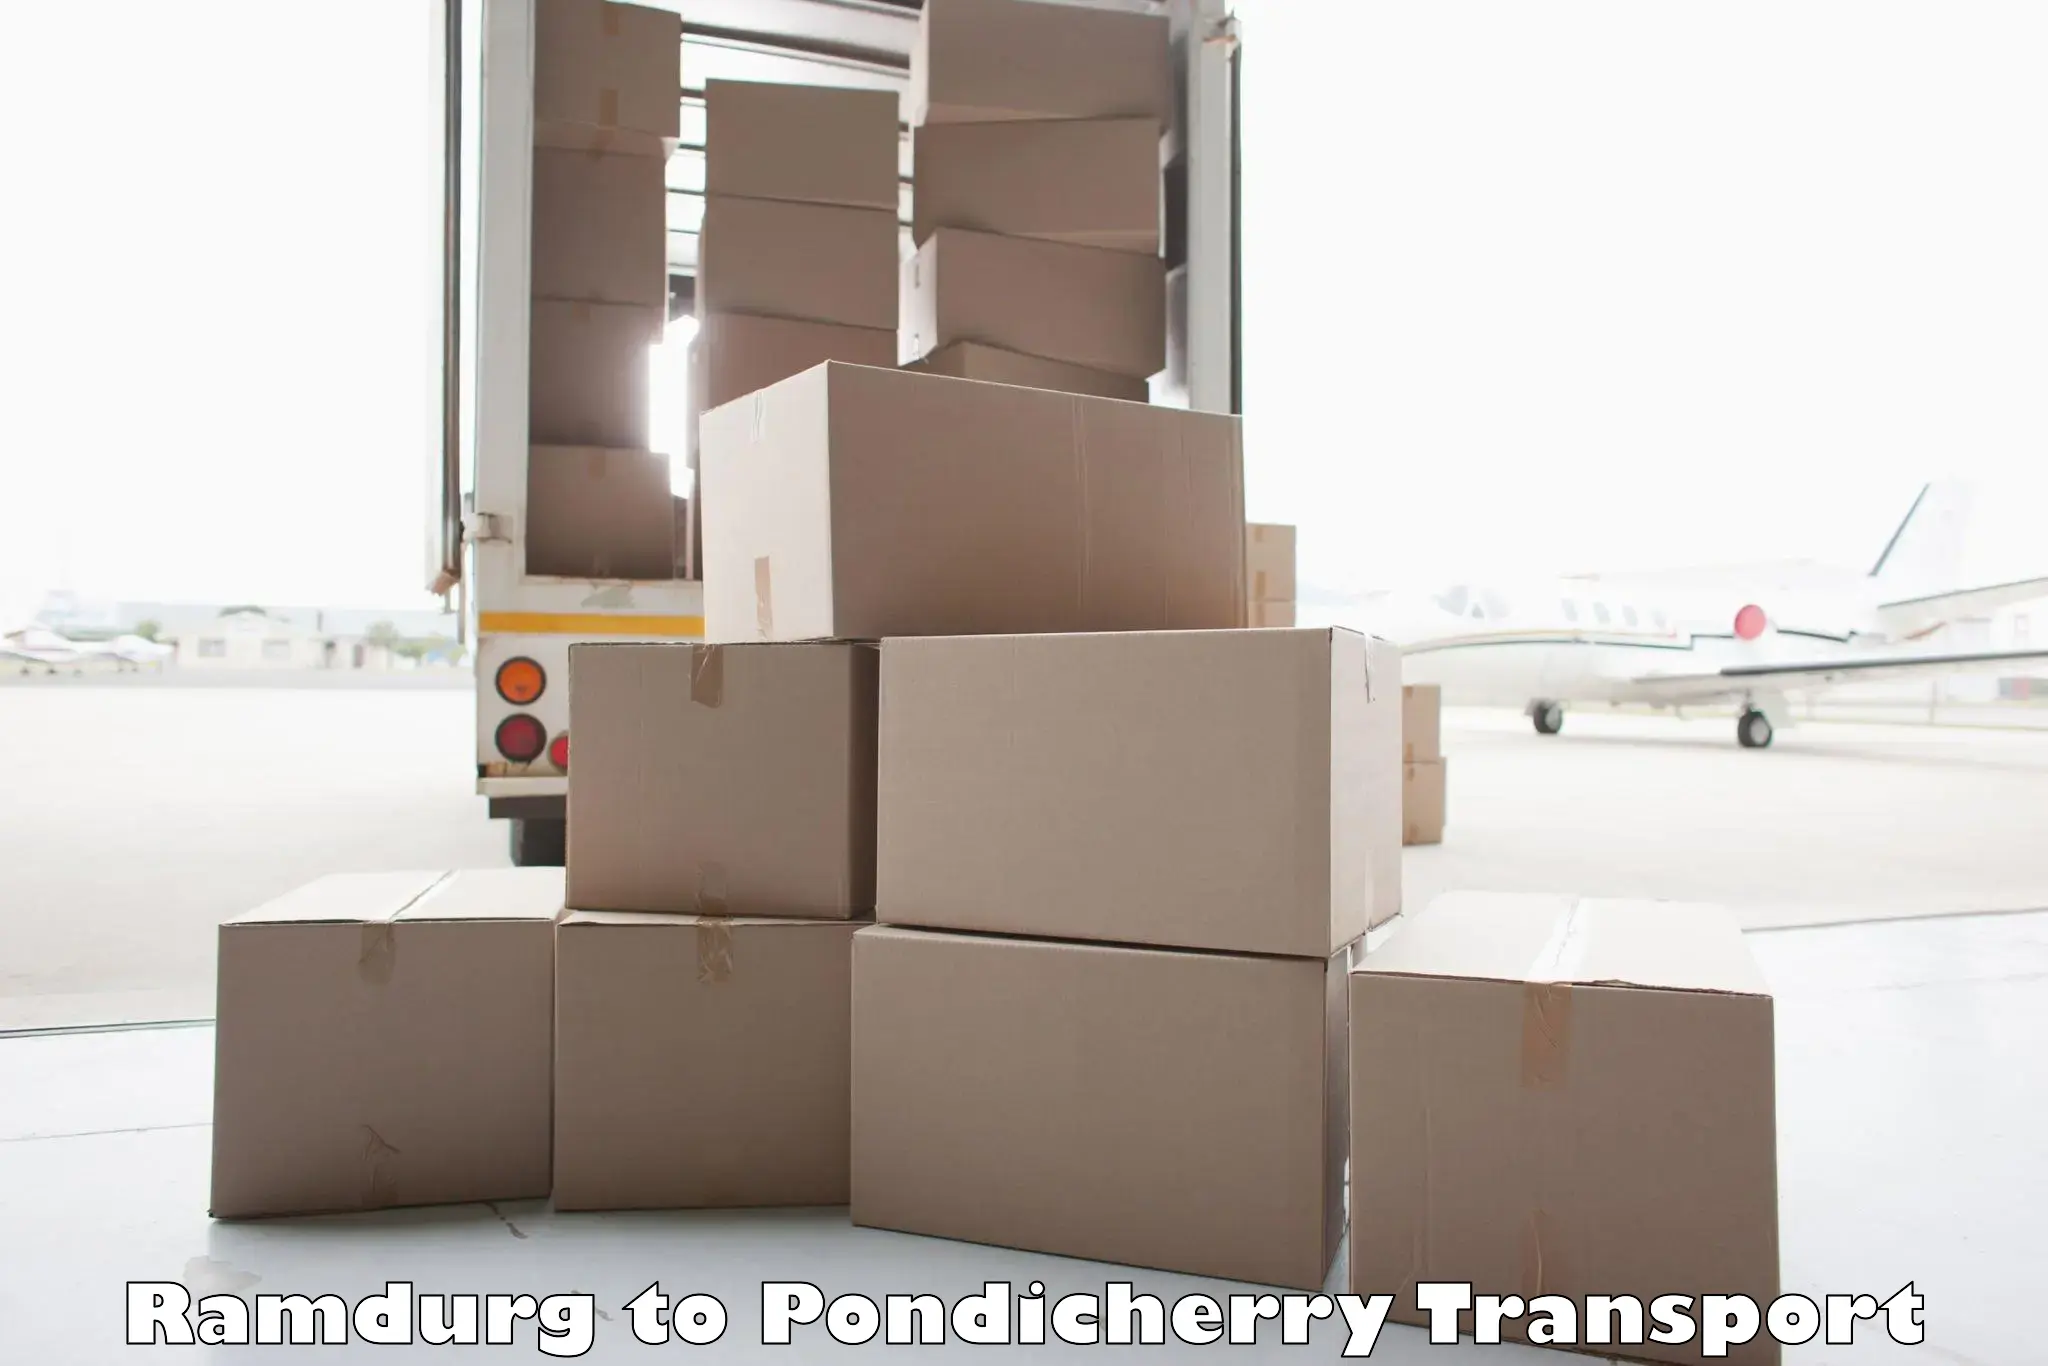 Two wheeler parcel service Ramdurg to Pondicherry